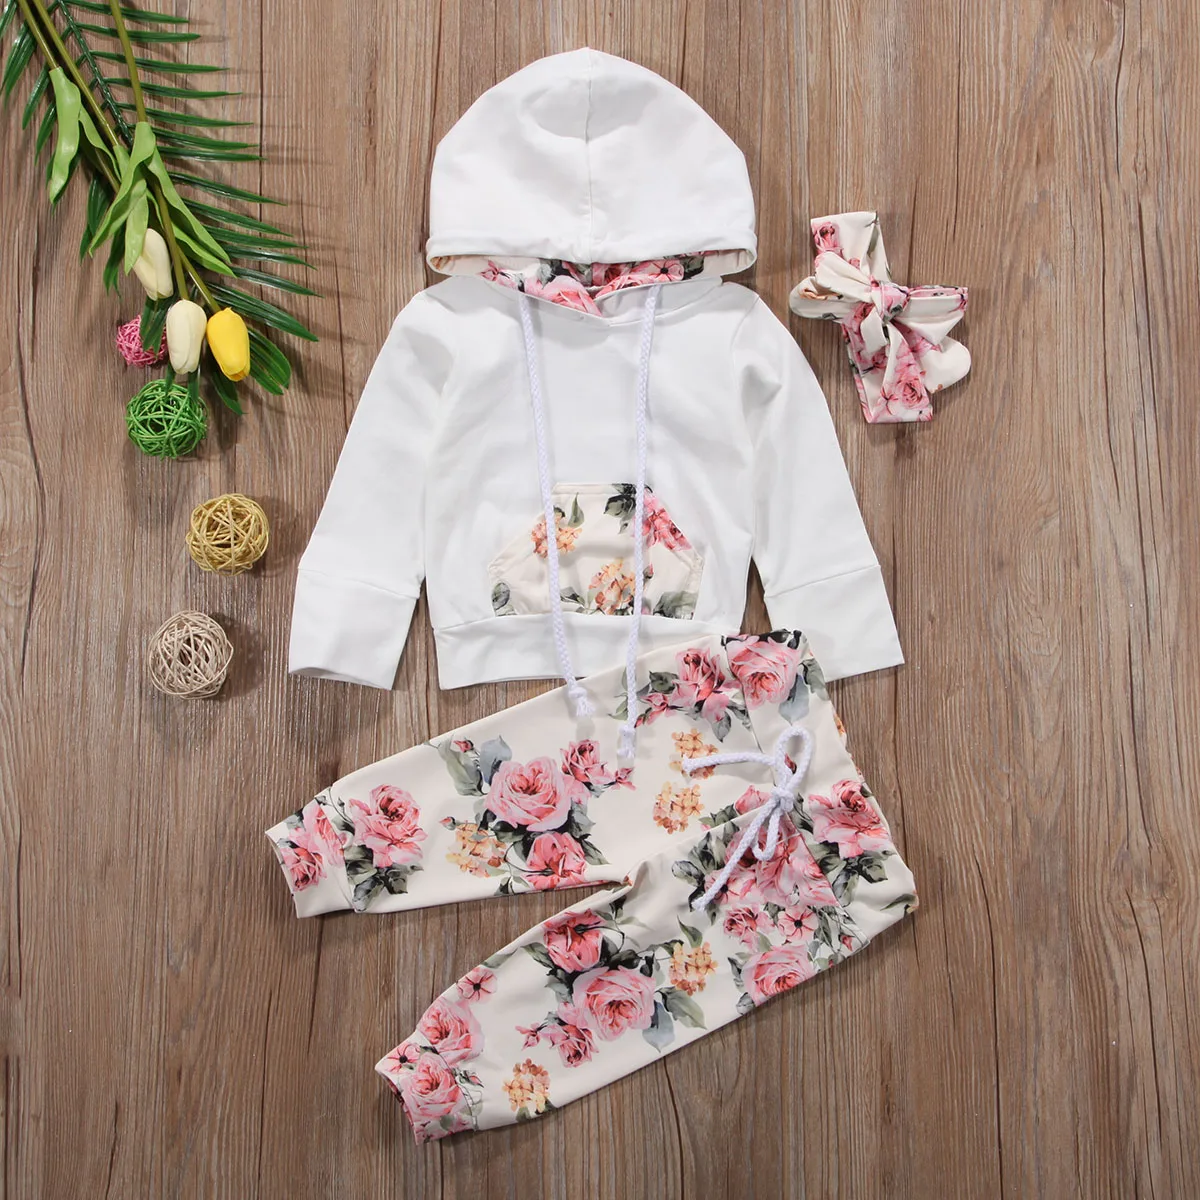 Новорожденных Одежда для детей; малышей; девочек толстовка с капюшоном HoodiesTops+ брюки с цветочным принтом брюки повязка цветок комплект одежды 0-24 м 3 шт